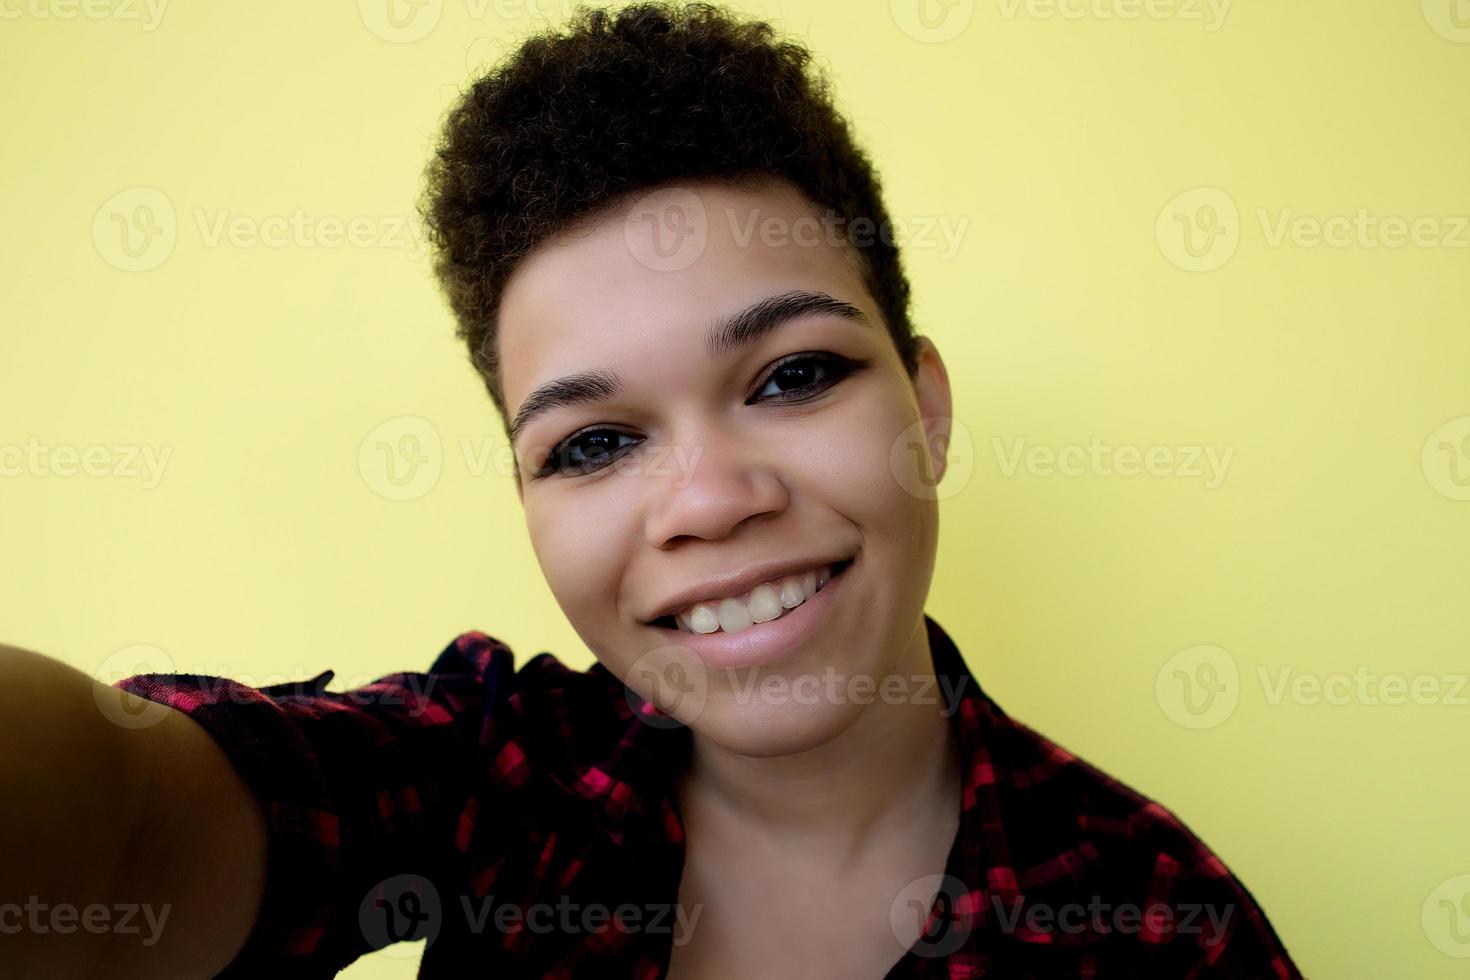 belle et heureuse femme afro-américaine aux cheveux courts sur fond jaune, prend un selfie, portrait en gros plan photo